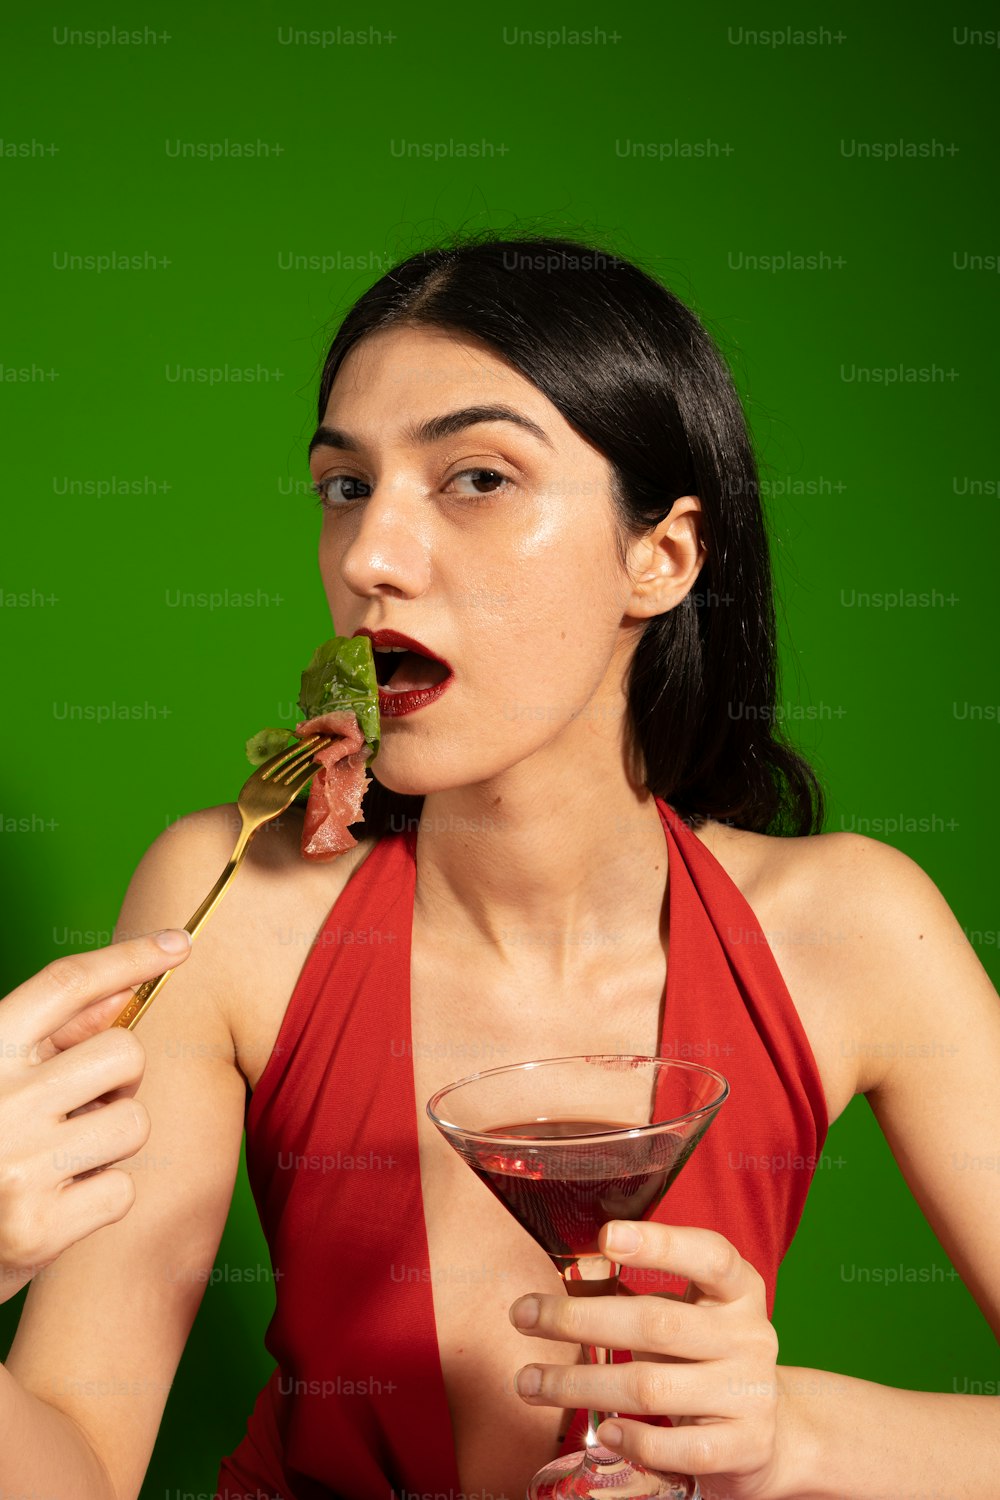 Une femme en robe rouge mangeant un morceau de nourriture